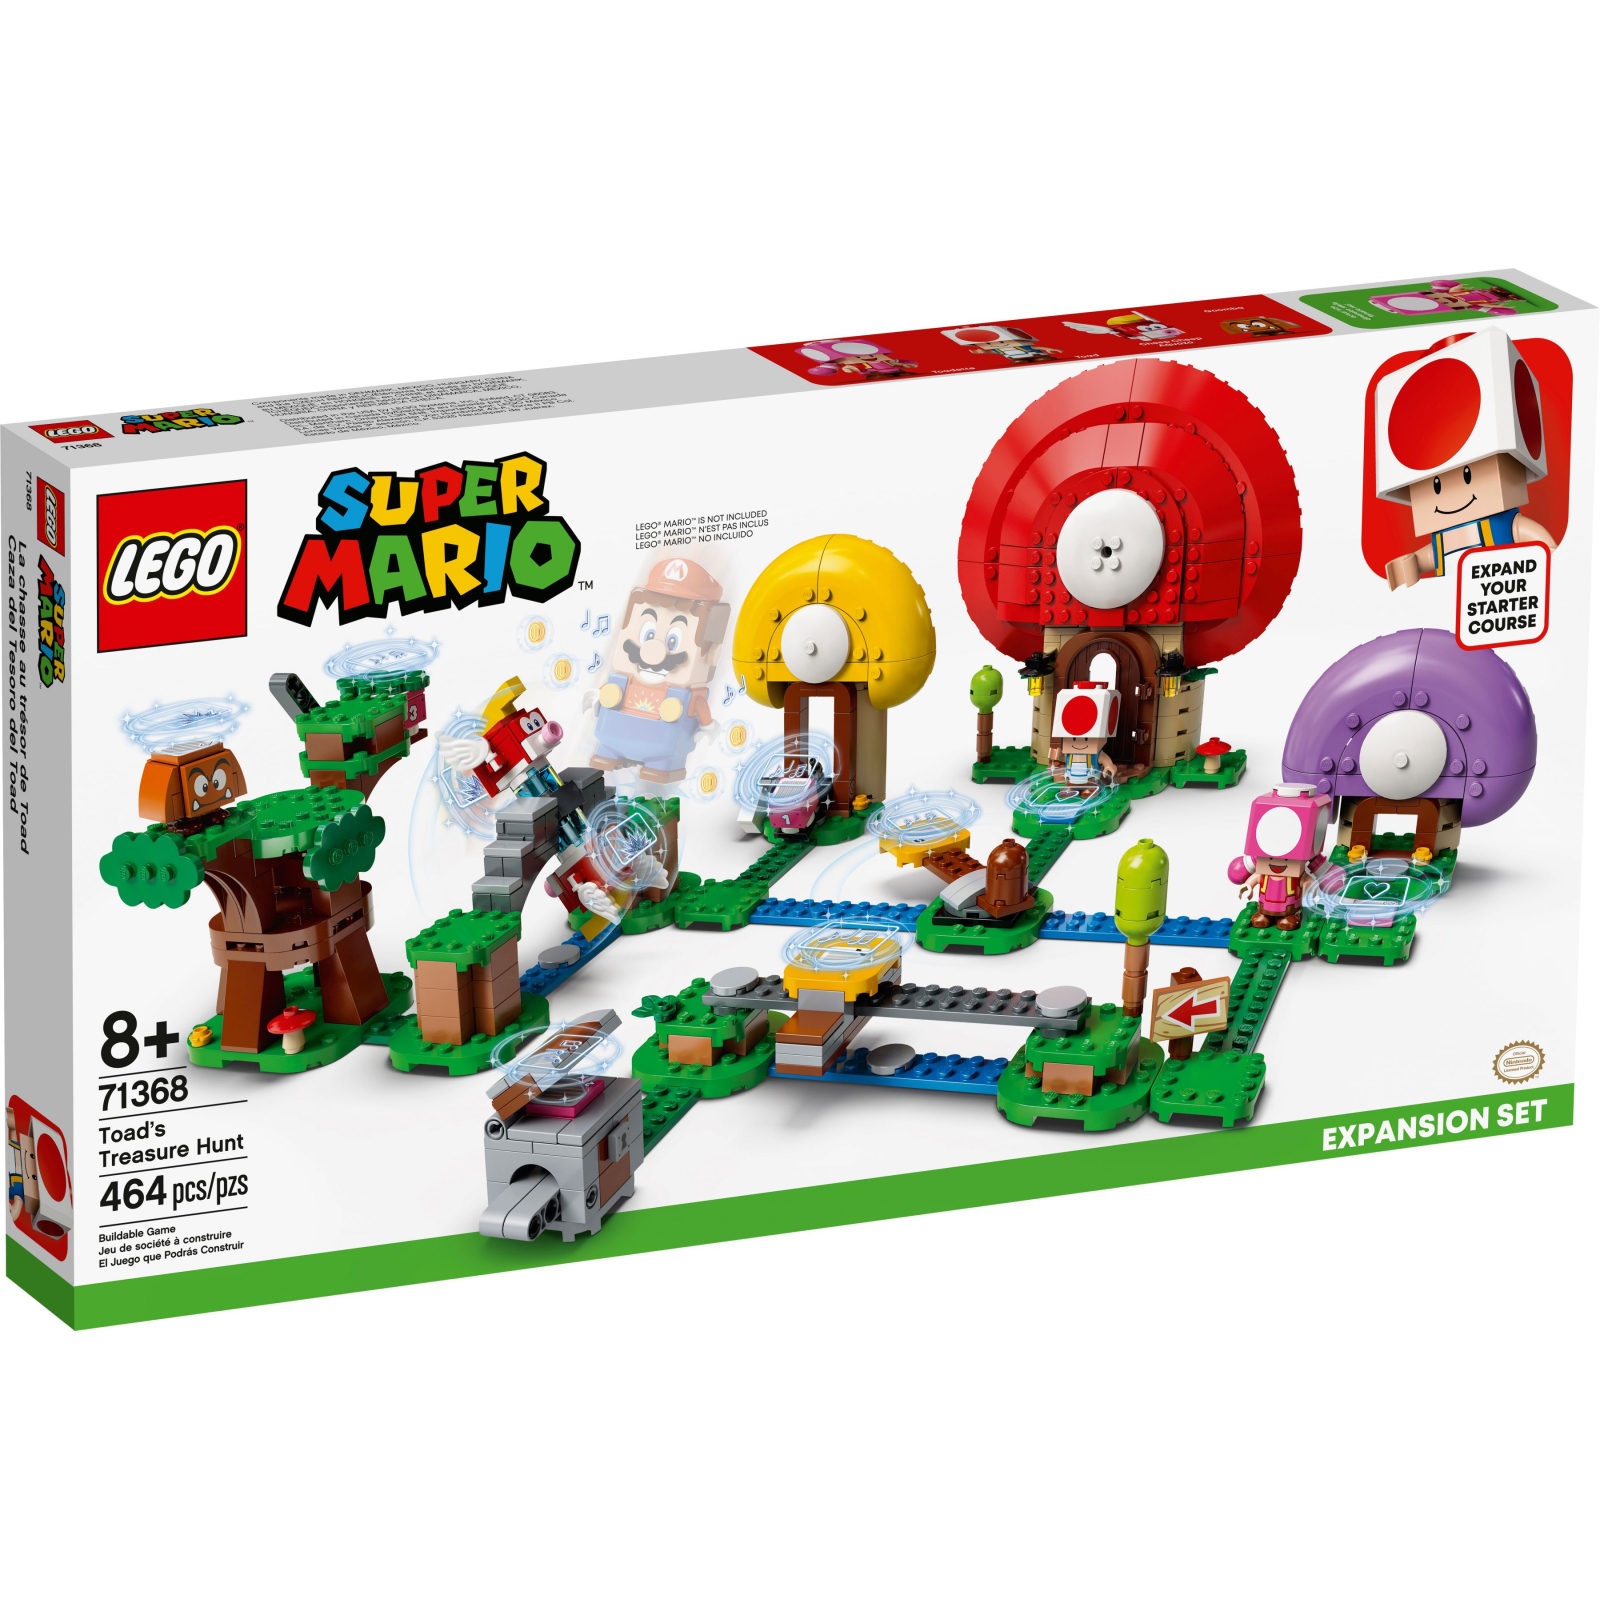 Конструктор LEGO Super Mario Погоня за сокровищами Тоада дополнительный набор (71368)